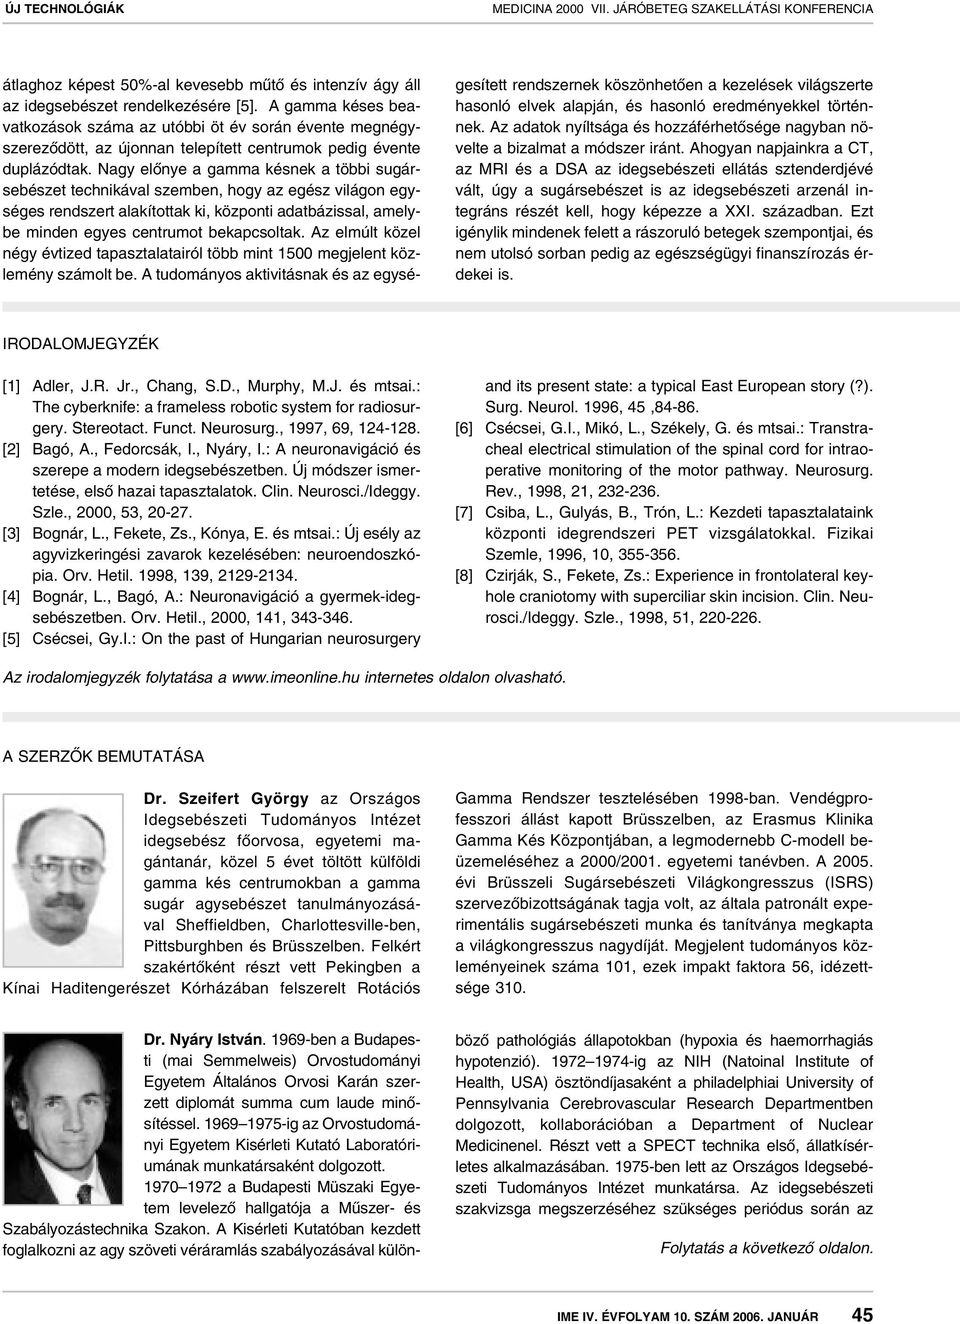 A gamma kés arany standard a sztereotaxiás sugár agysebészetben - PDF  Ingyenes letöltés